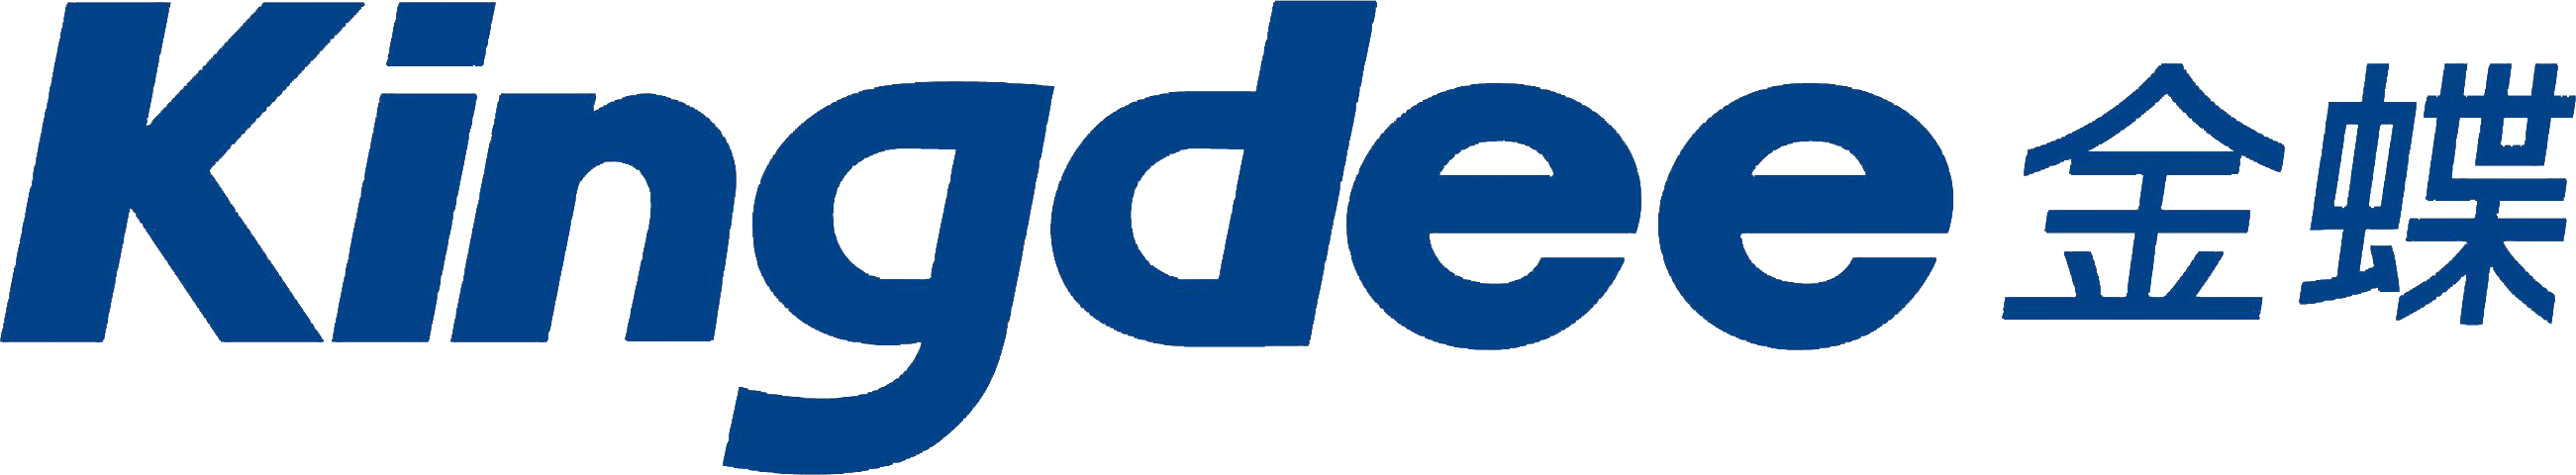 Kingdee金蝶-法本信息软件开发技术服务领域合作伙伴